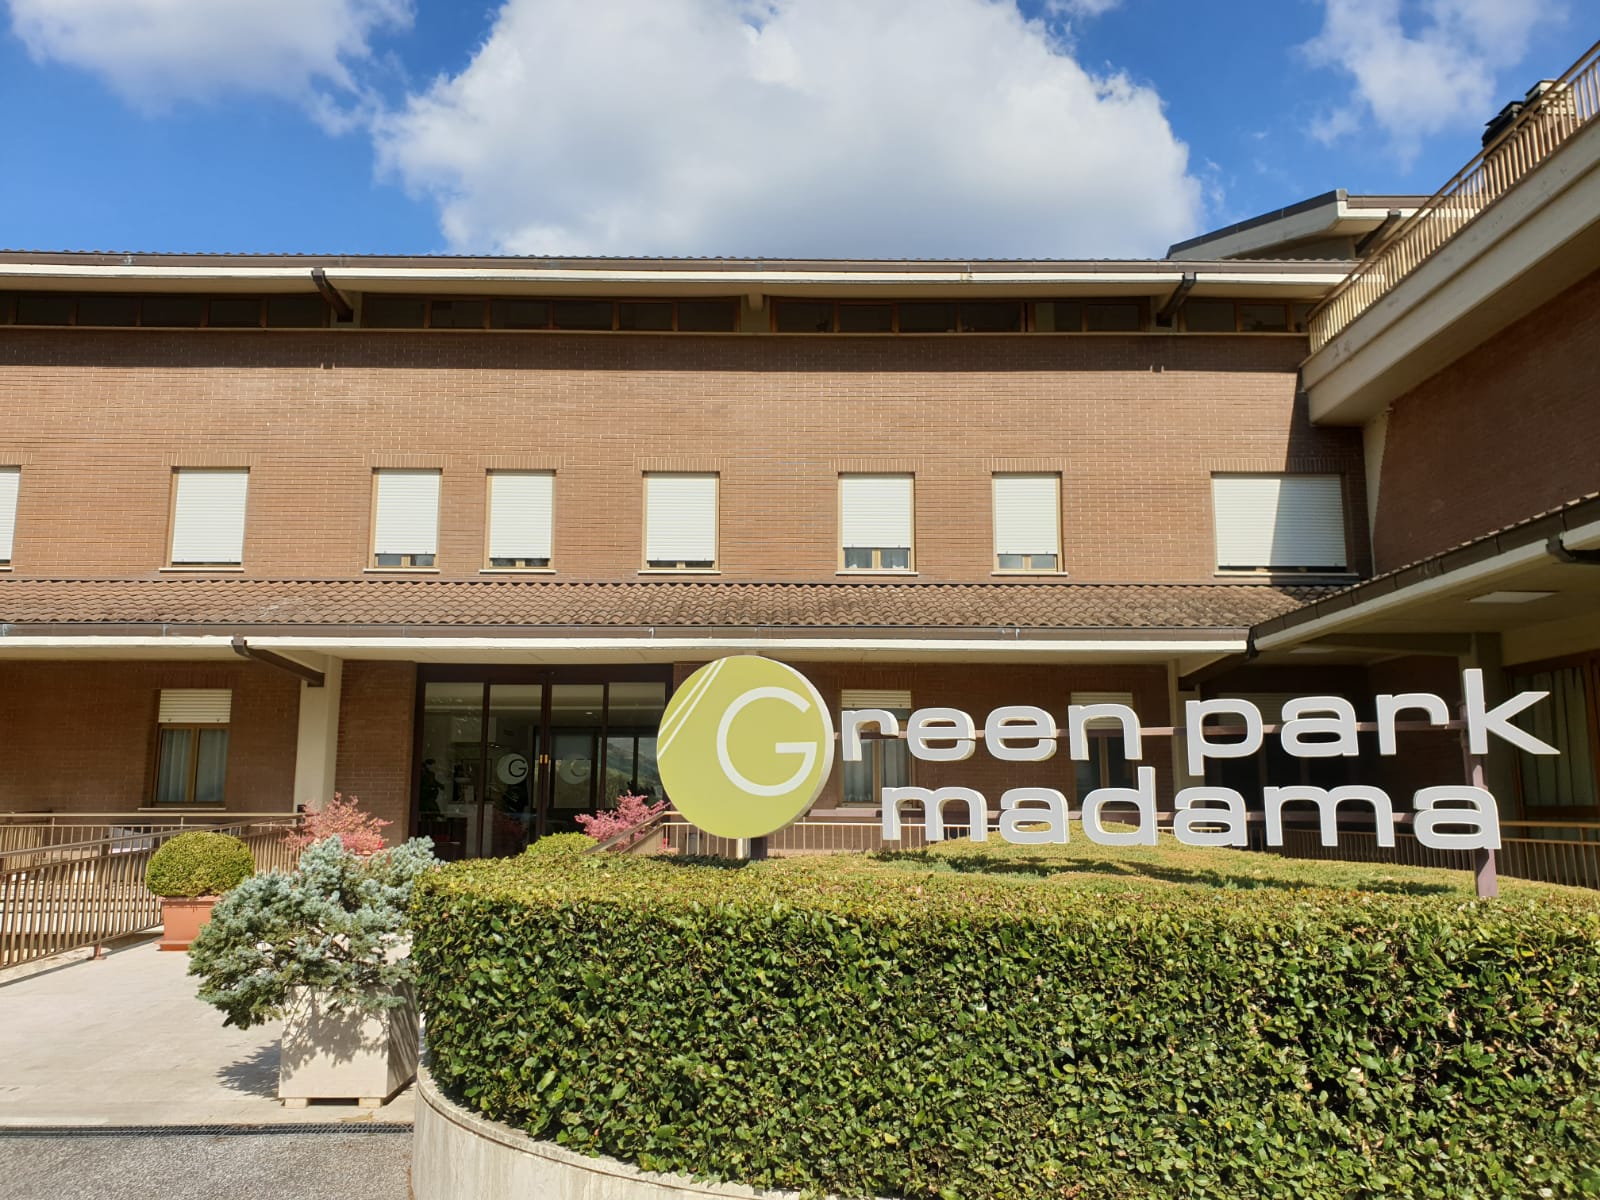 Green Park Madama: un Wellness Center immerso nel verde per evadere dalla quotidianità